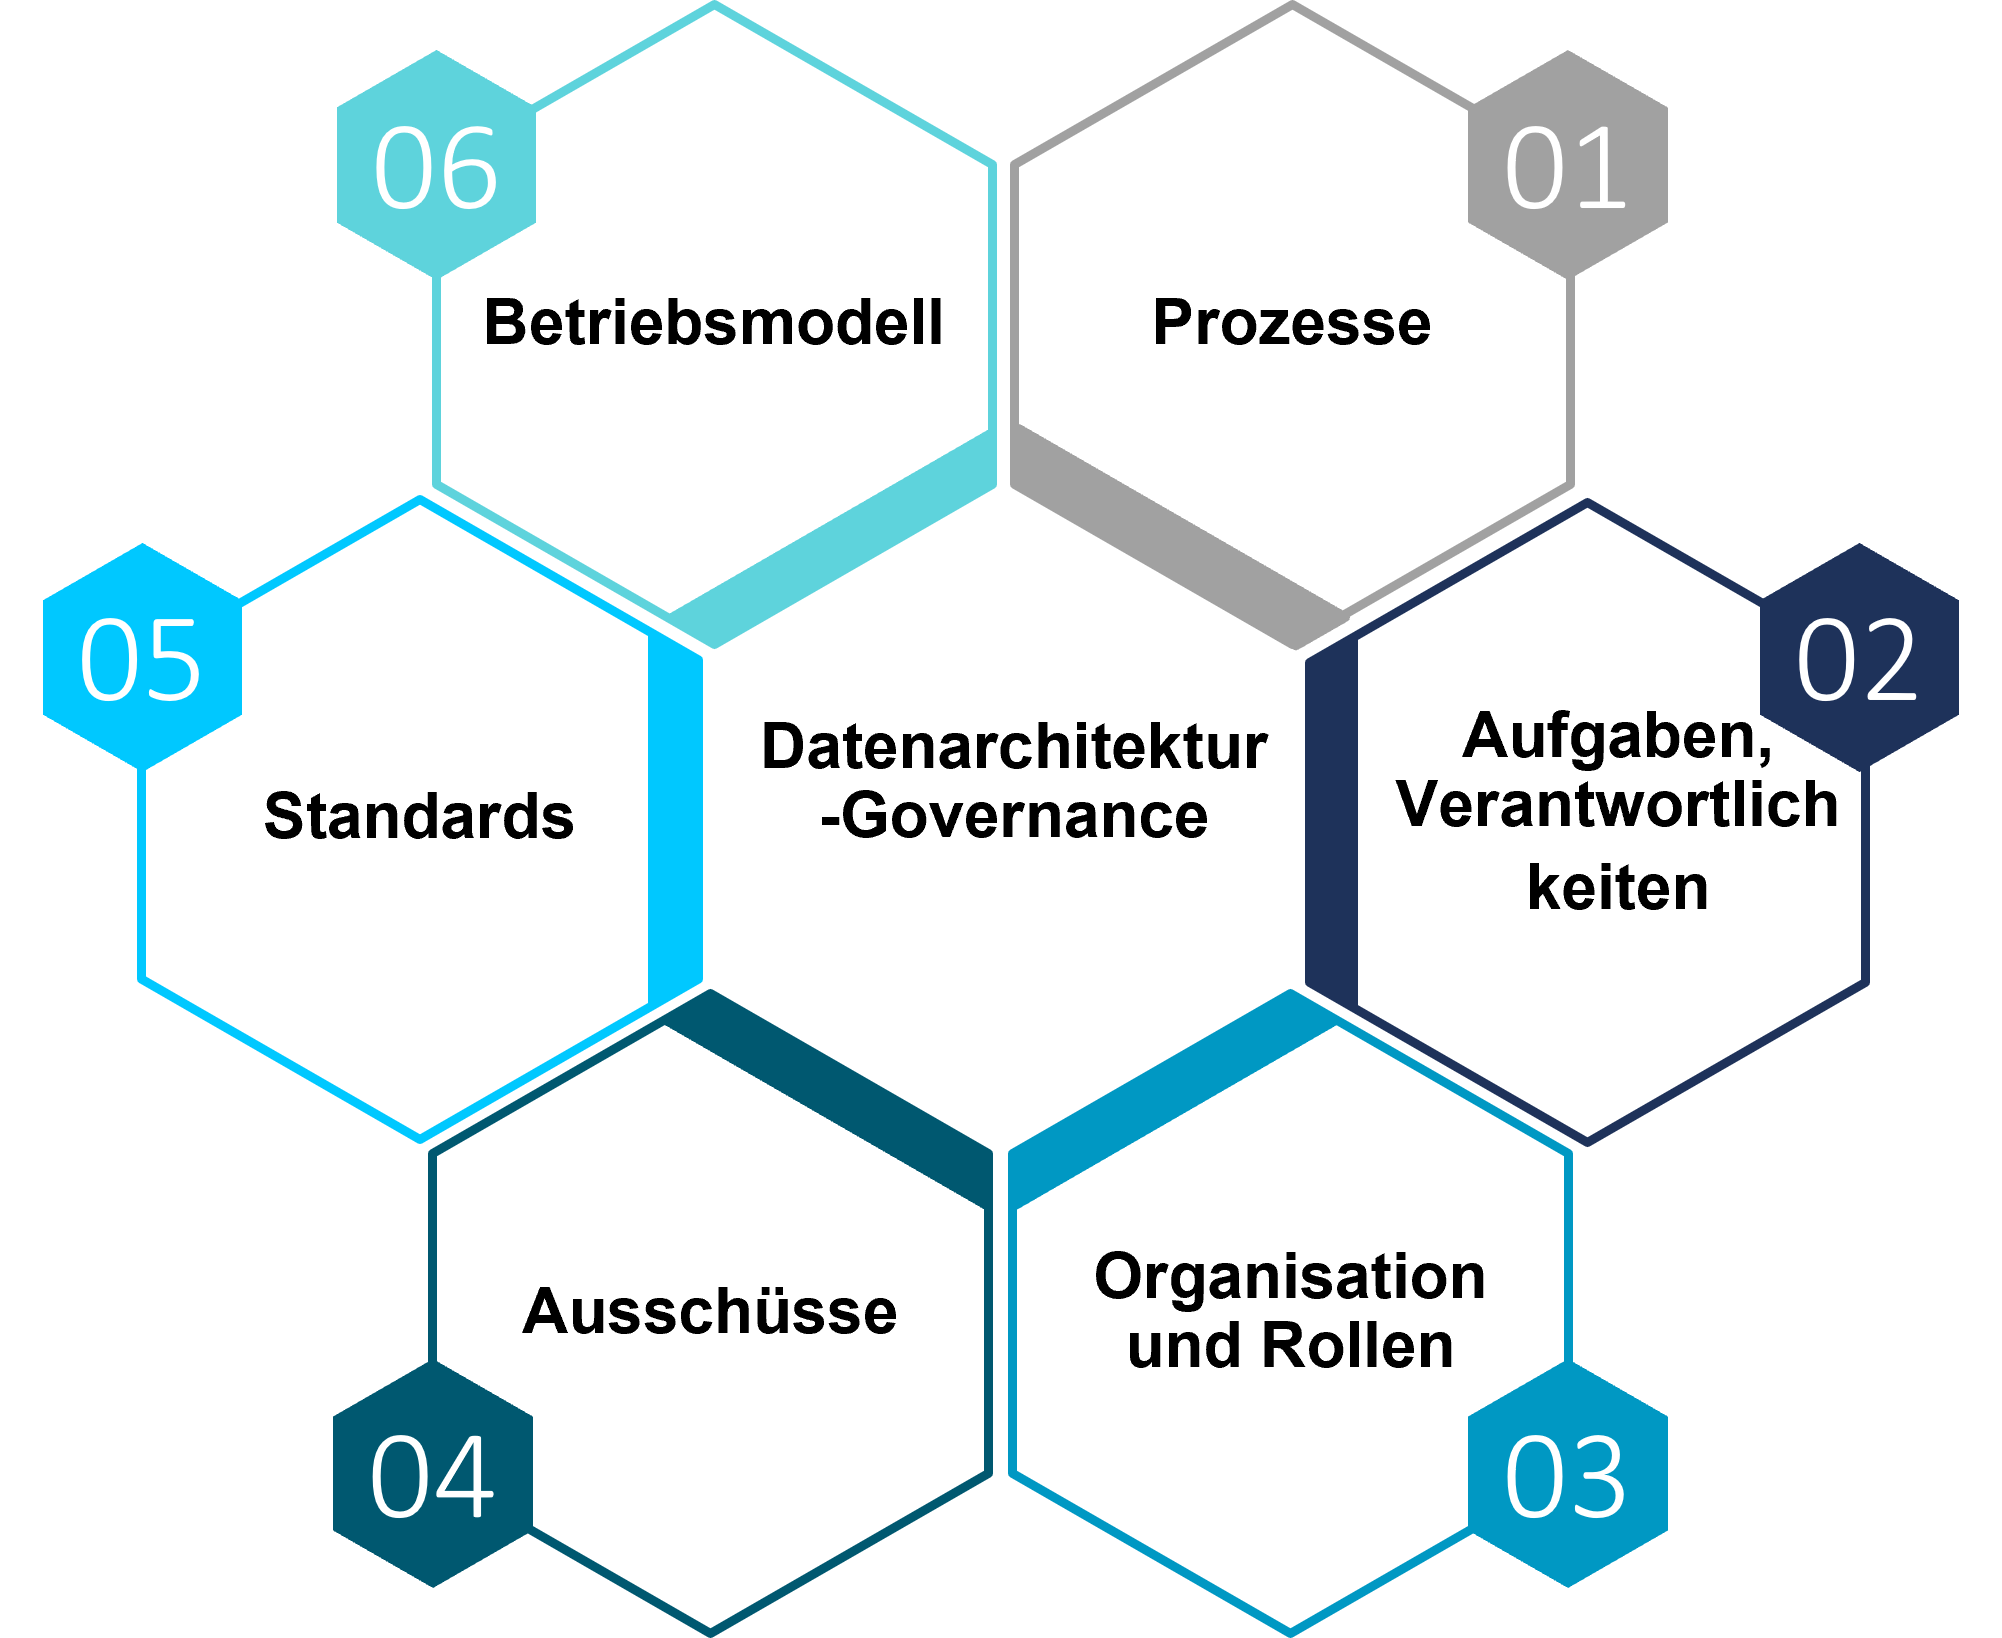 Abbildung 1: Sechs Kernelemente eines Governance-Rahmens für die Datenarchitektur